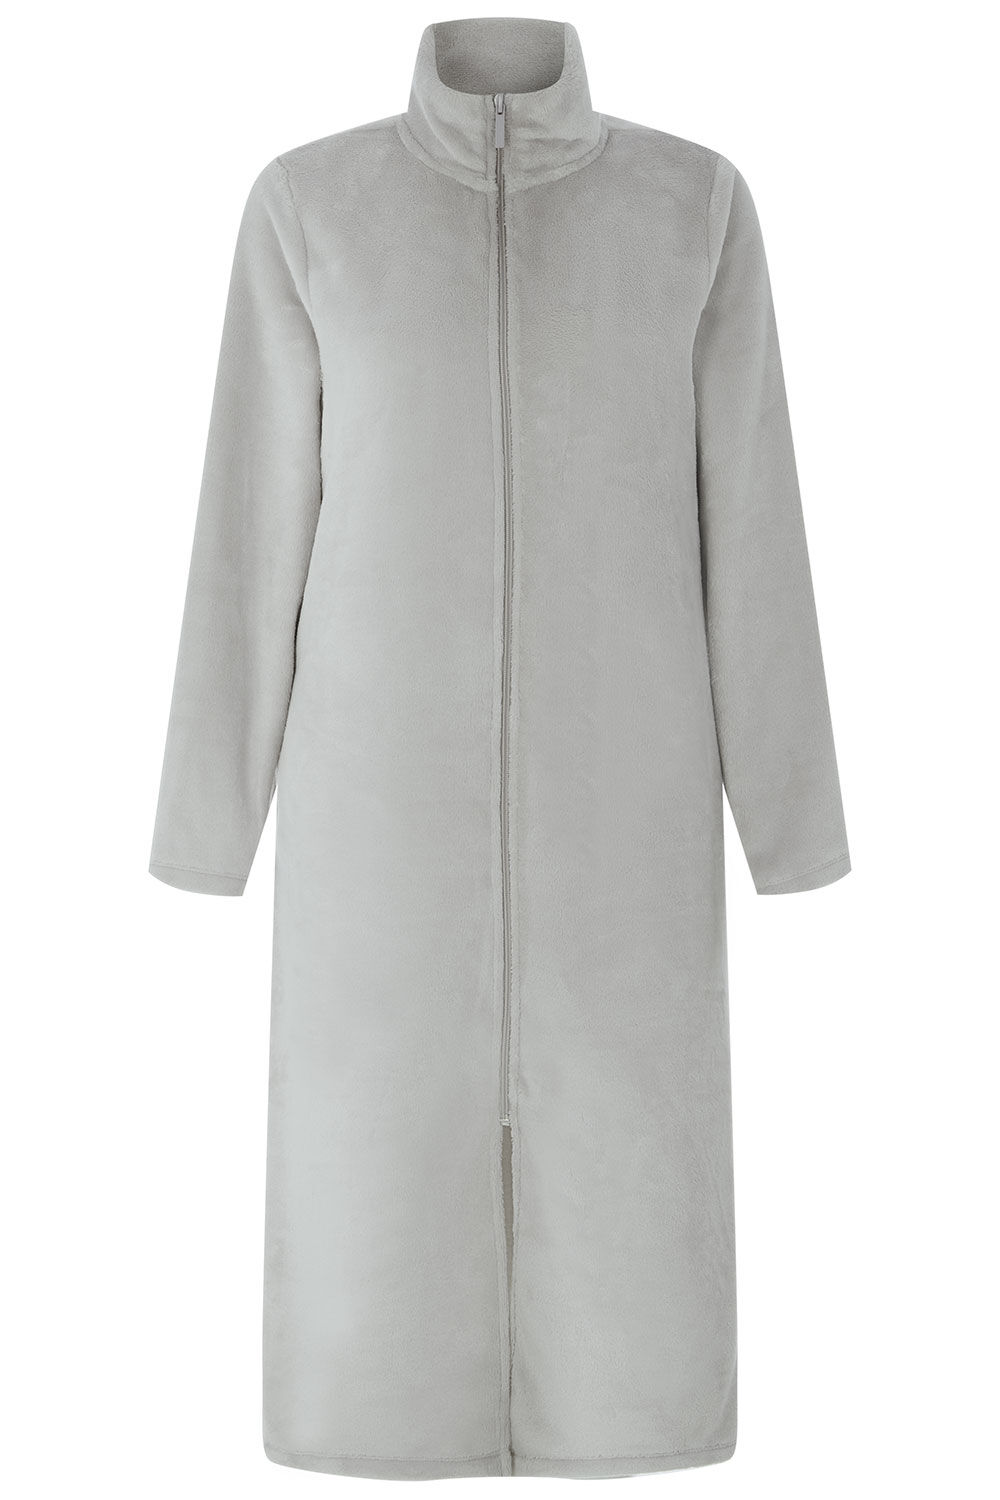 Women Long Luxury Fleece Hooded Dressing Gown Zip Bath Robe Blue Moon  Nightgown | Fruugo JP